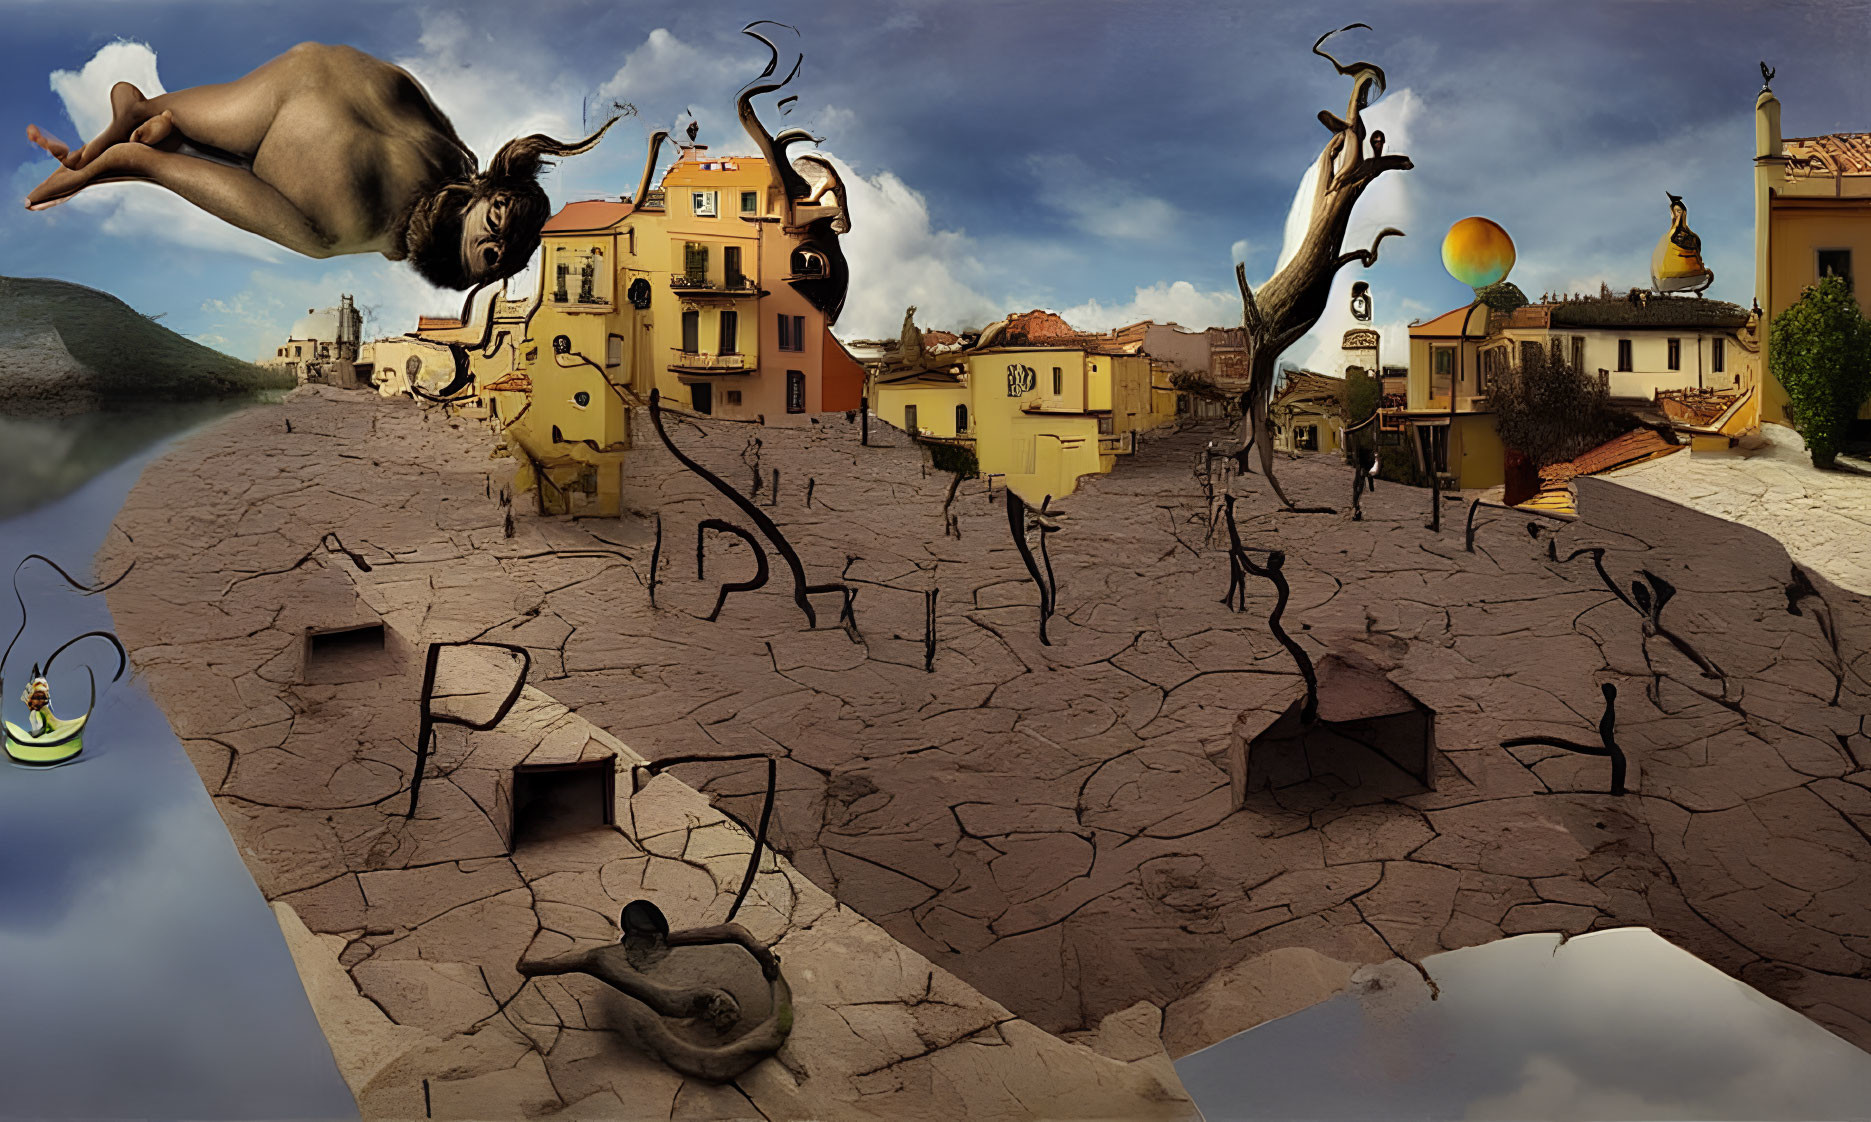 Surreal Salvador Dali-inspired melting landscape with dreamlike motifs